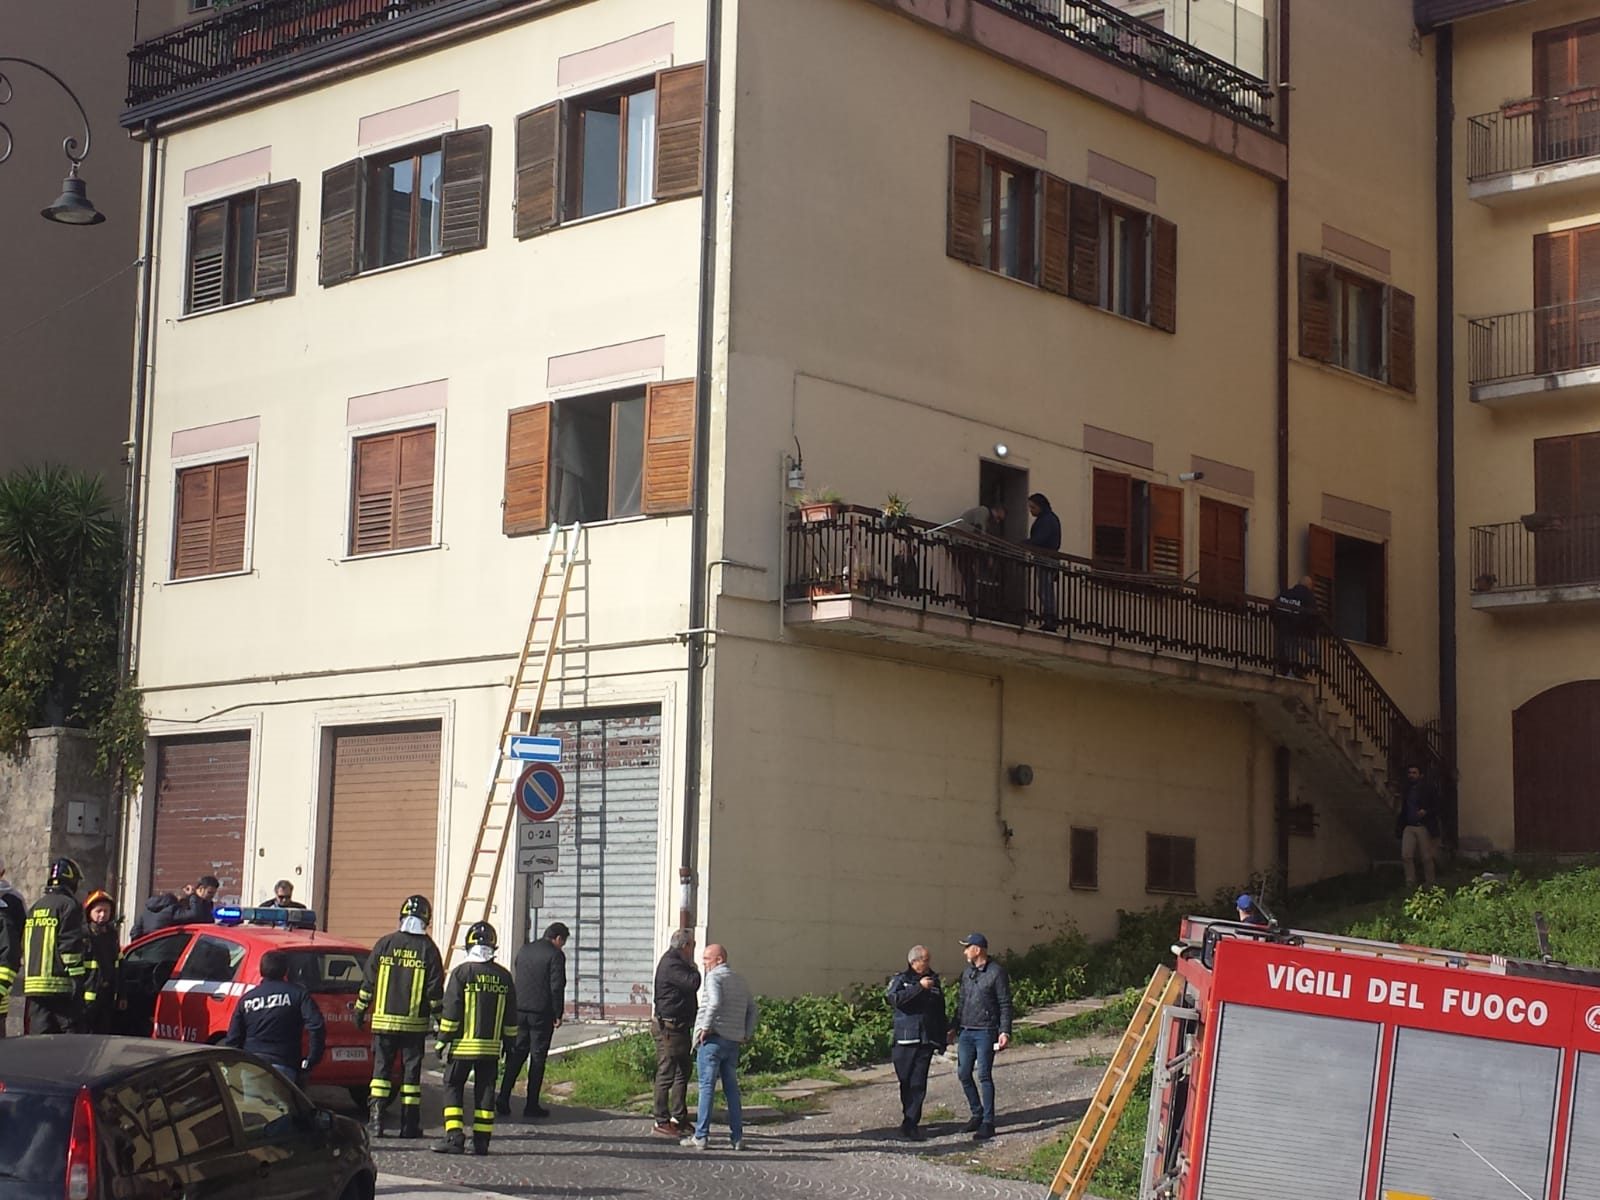 Tragedia in pieno centro storico ad Avellino.